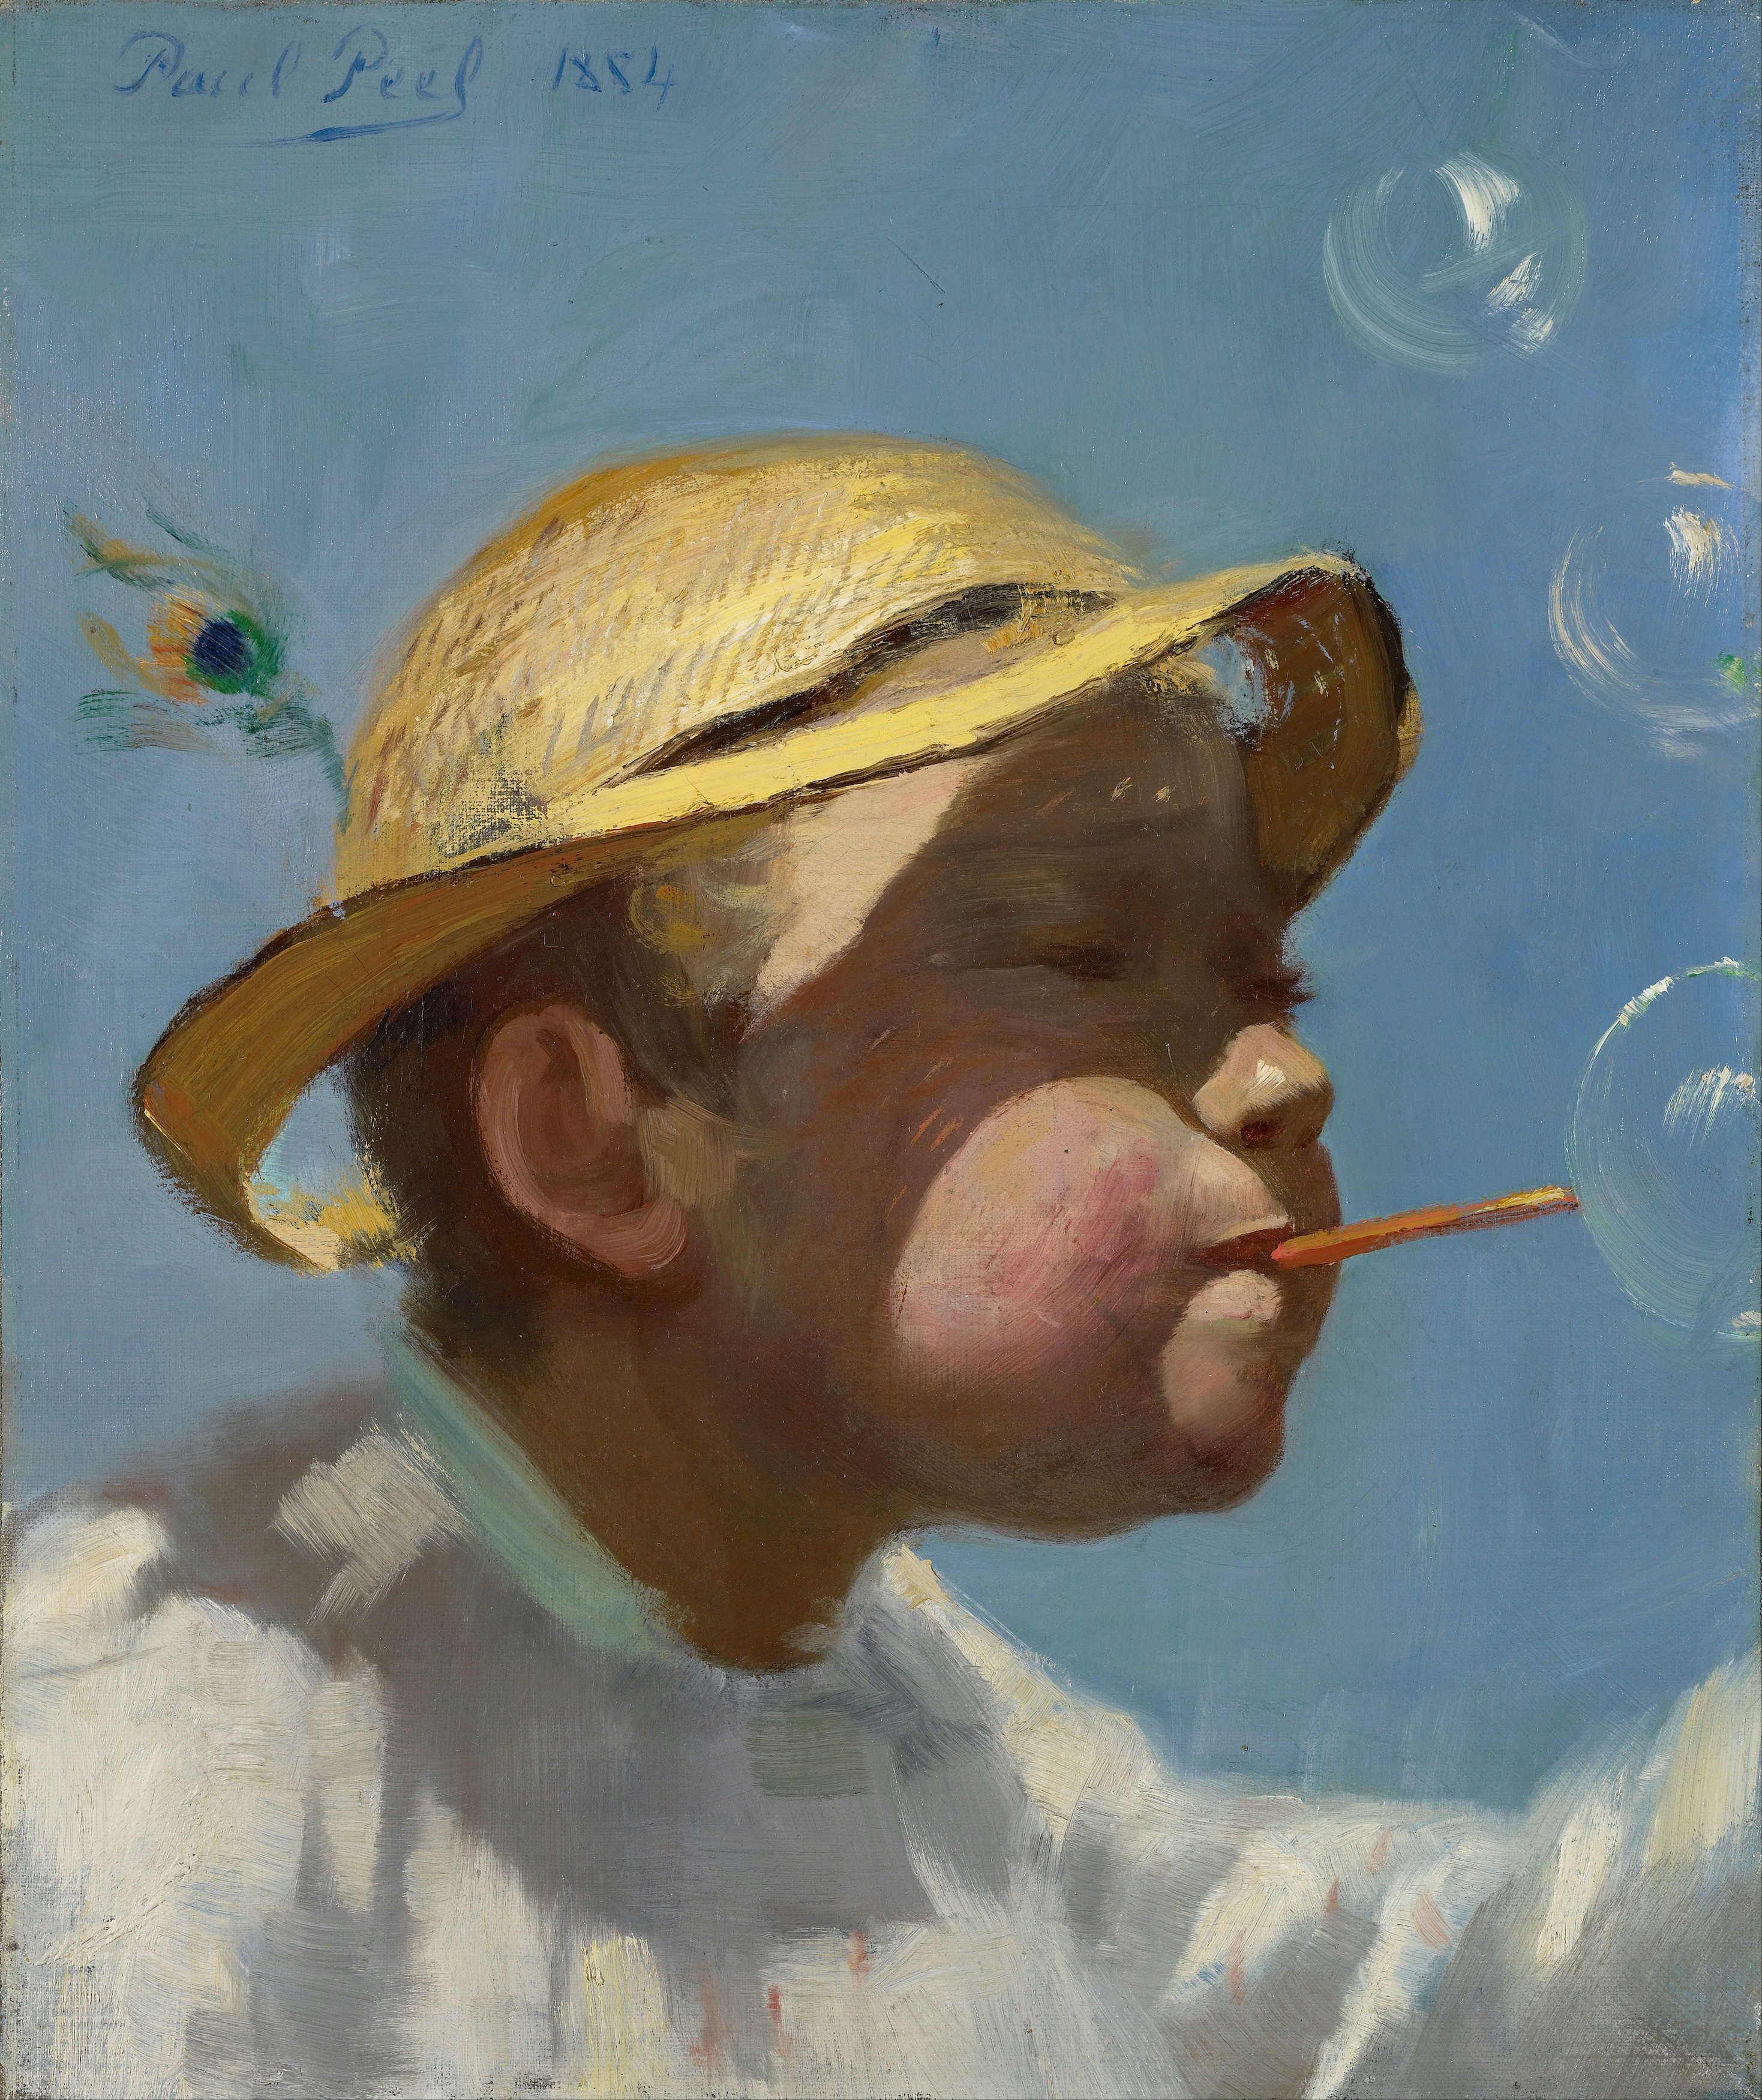 吹泡泡的男孩 by Paul Peel - 1884 - 35.9 x 43.2 cm 